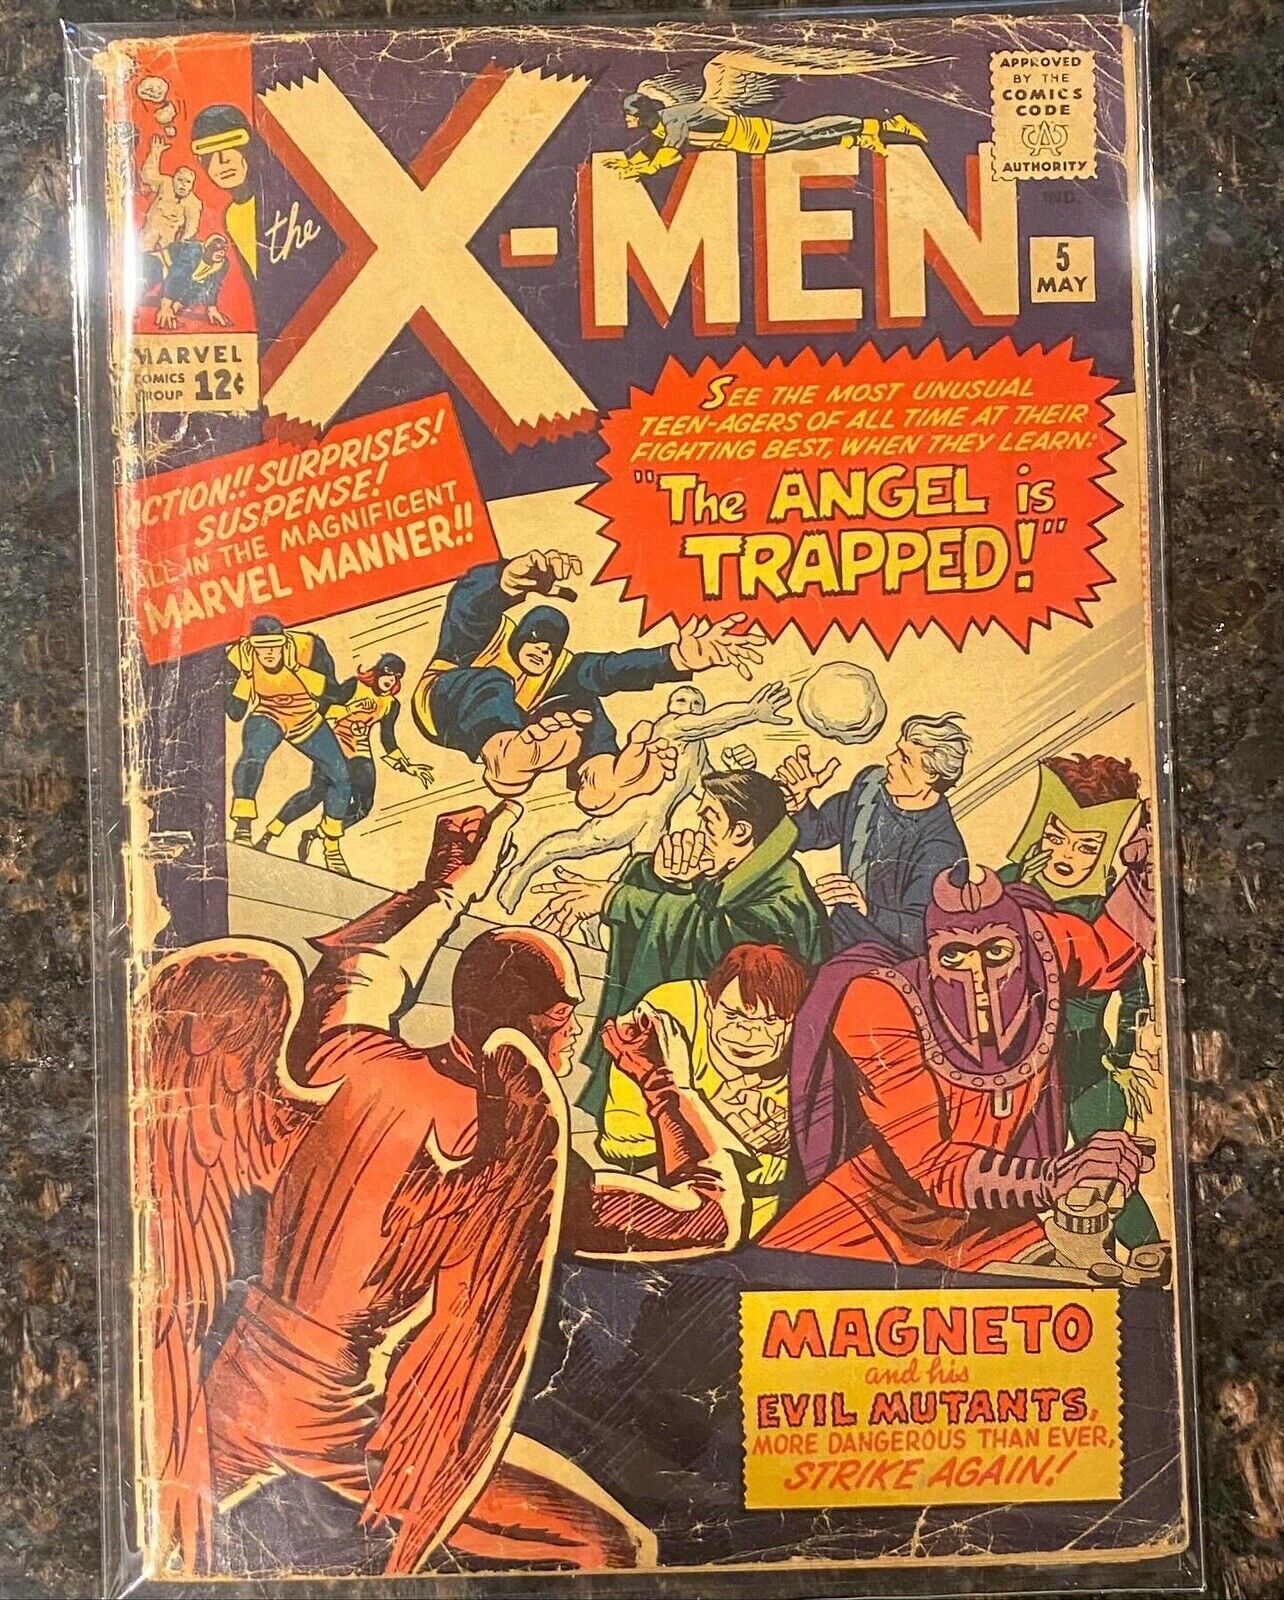 The X-Men #5 (Marvel Comics May 1964)